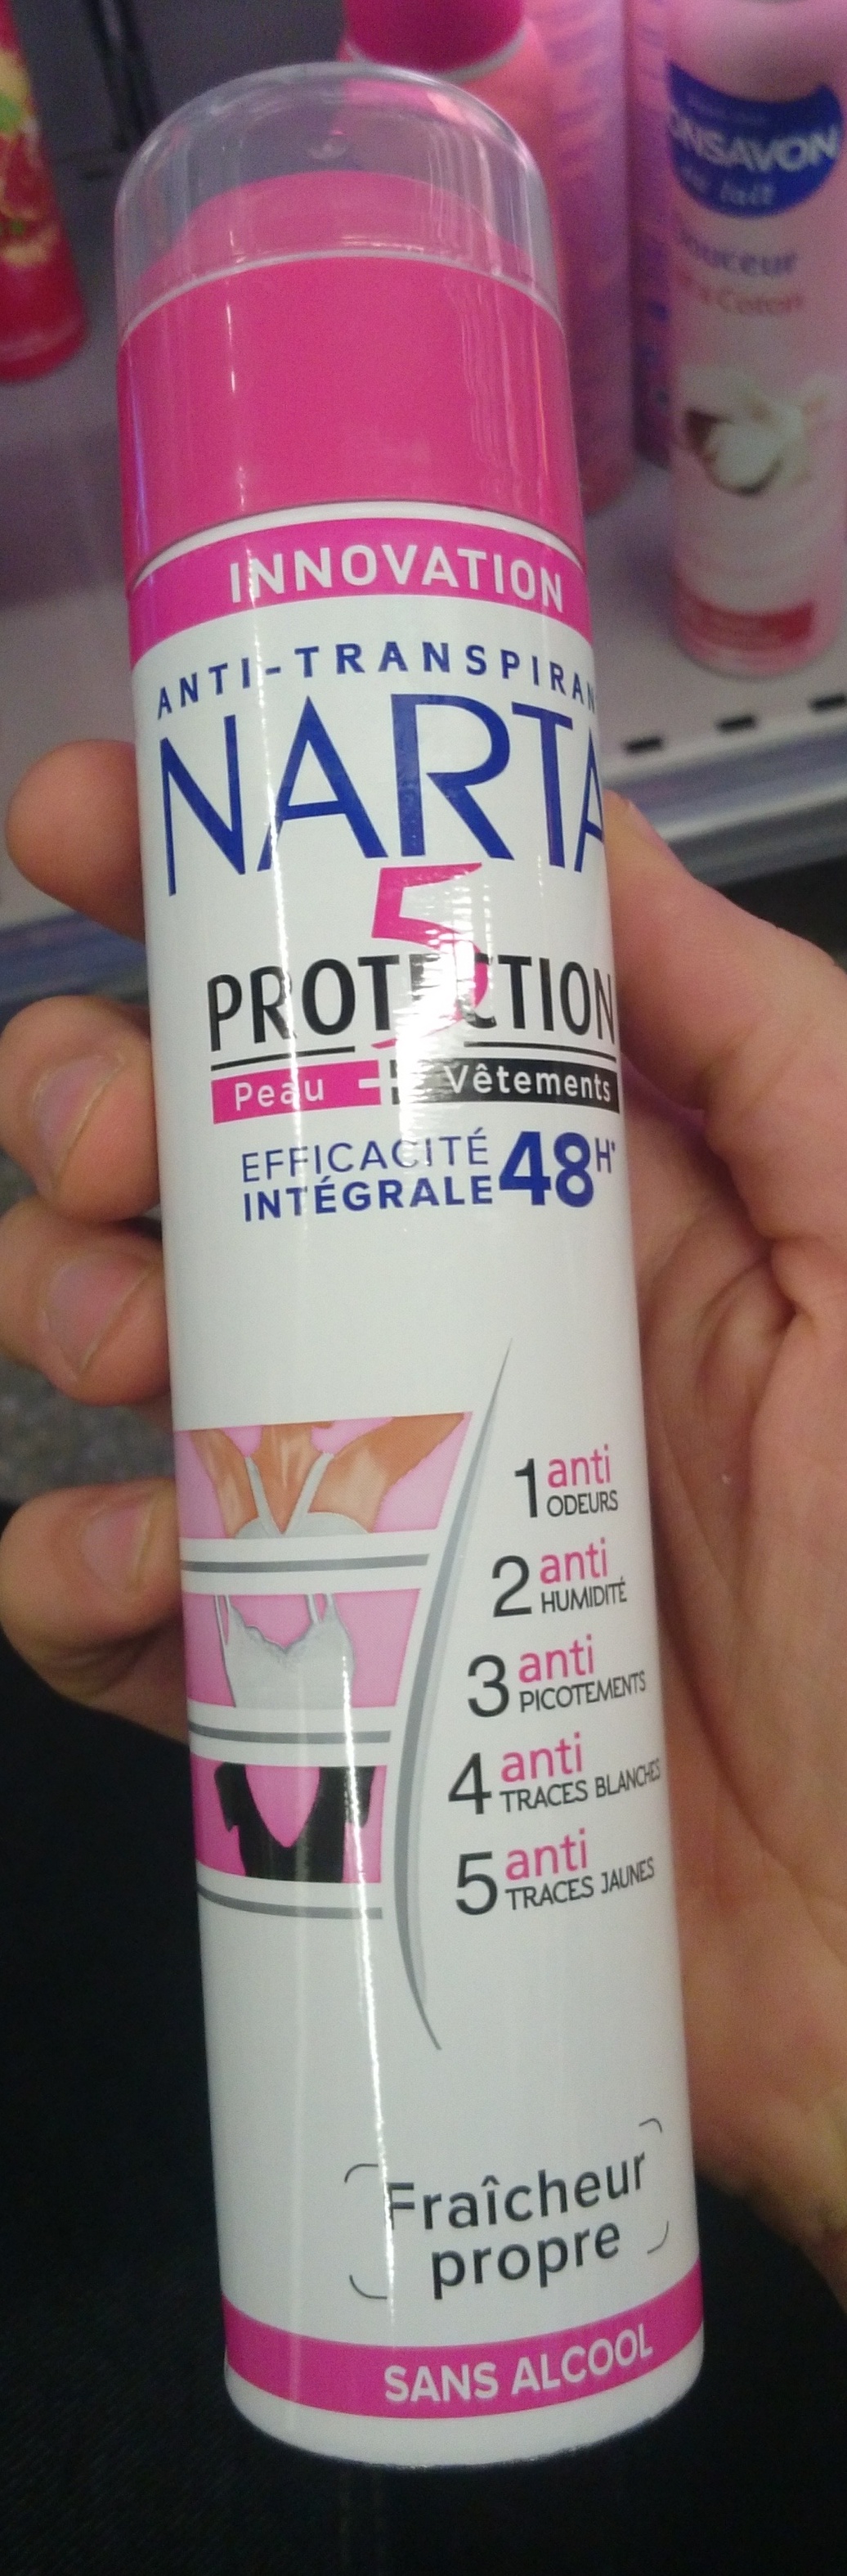 5 protections efficacité intégrale 48h - Produit - fr